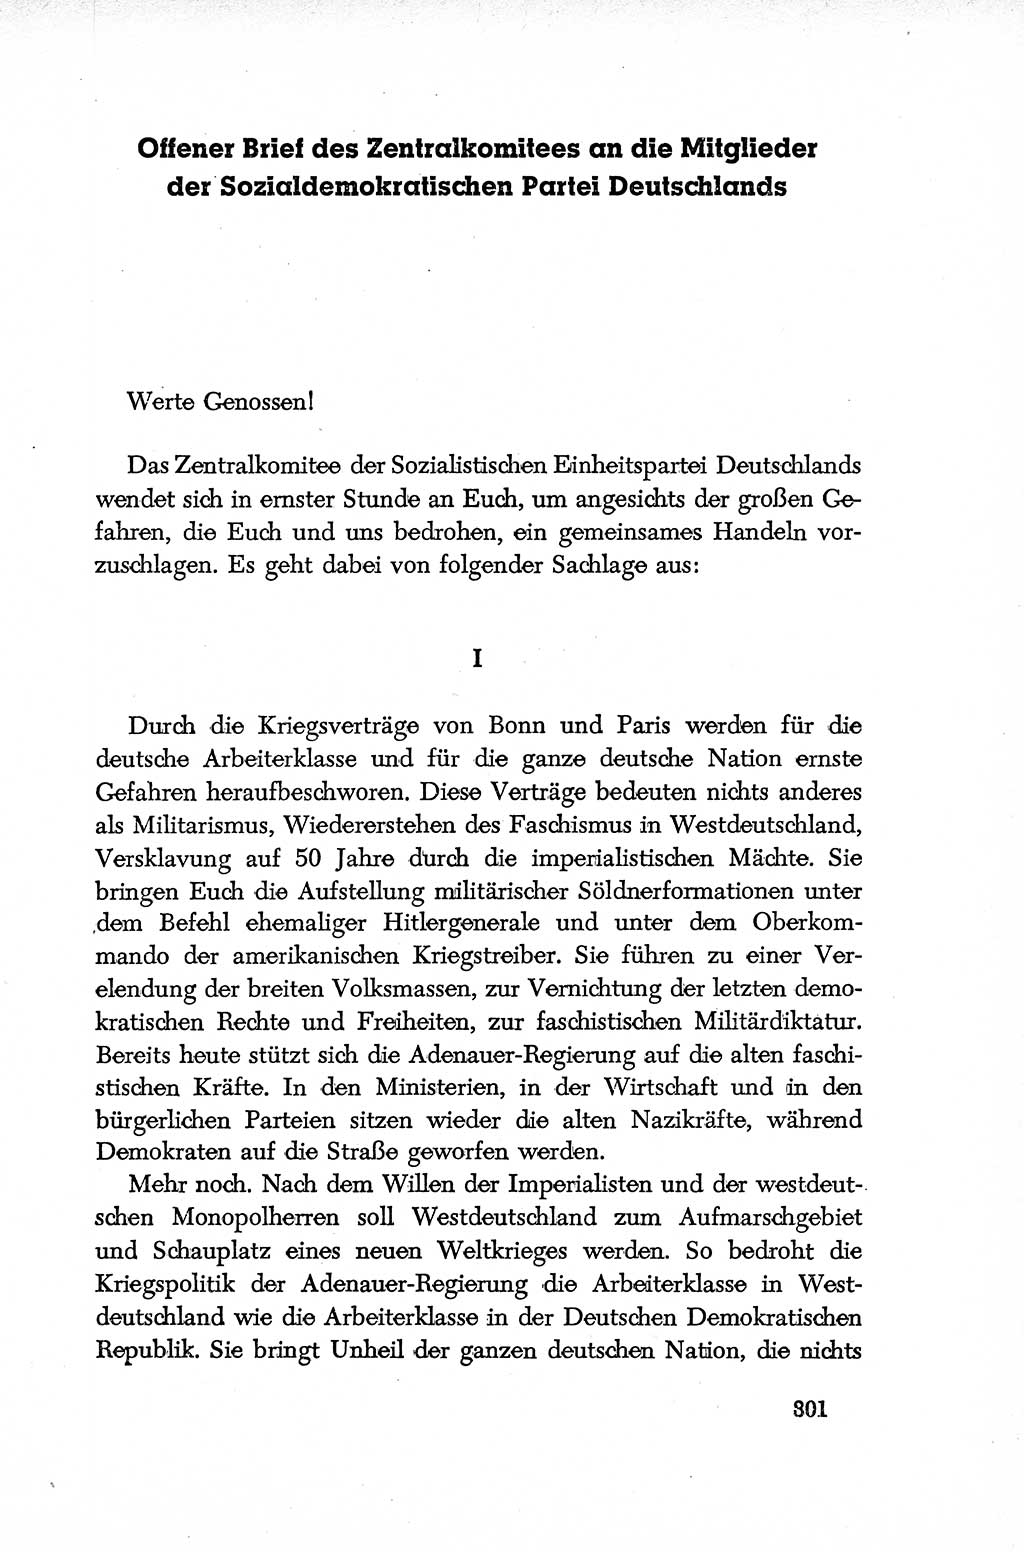 Dokumente der Sozialistischen Einheitspartei Deutschlands (SED) [Deutsche Demokratische Republik (DDR)] 1952-1953, Seite 301 (Dok. SED DDR 1952-1953, S. 301)